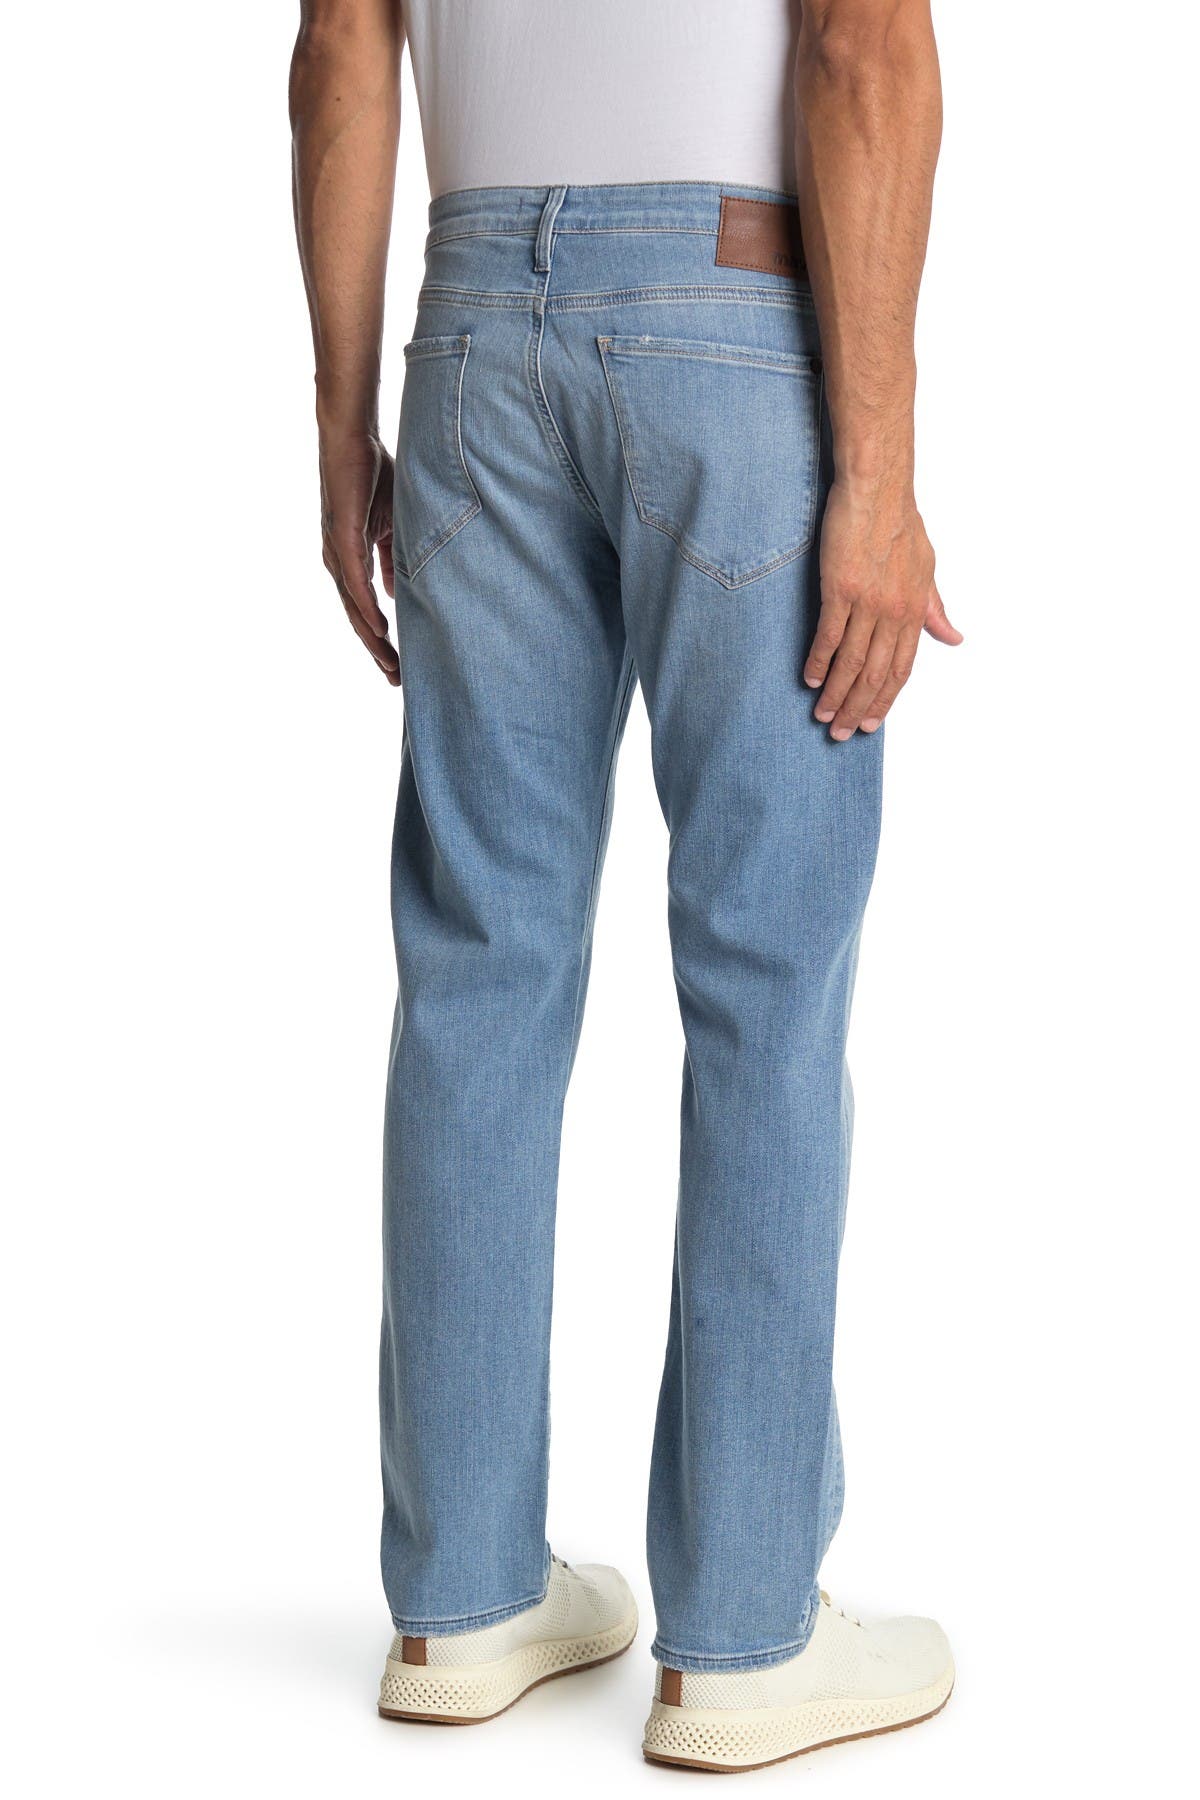 Mavi Marcus Authentic Jeans In Medium Blue